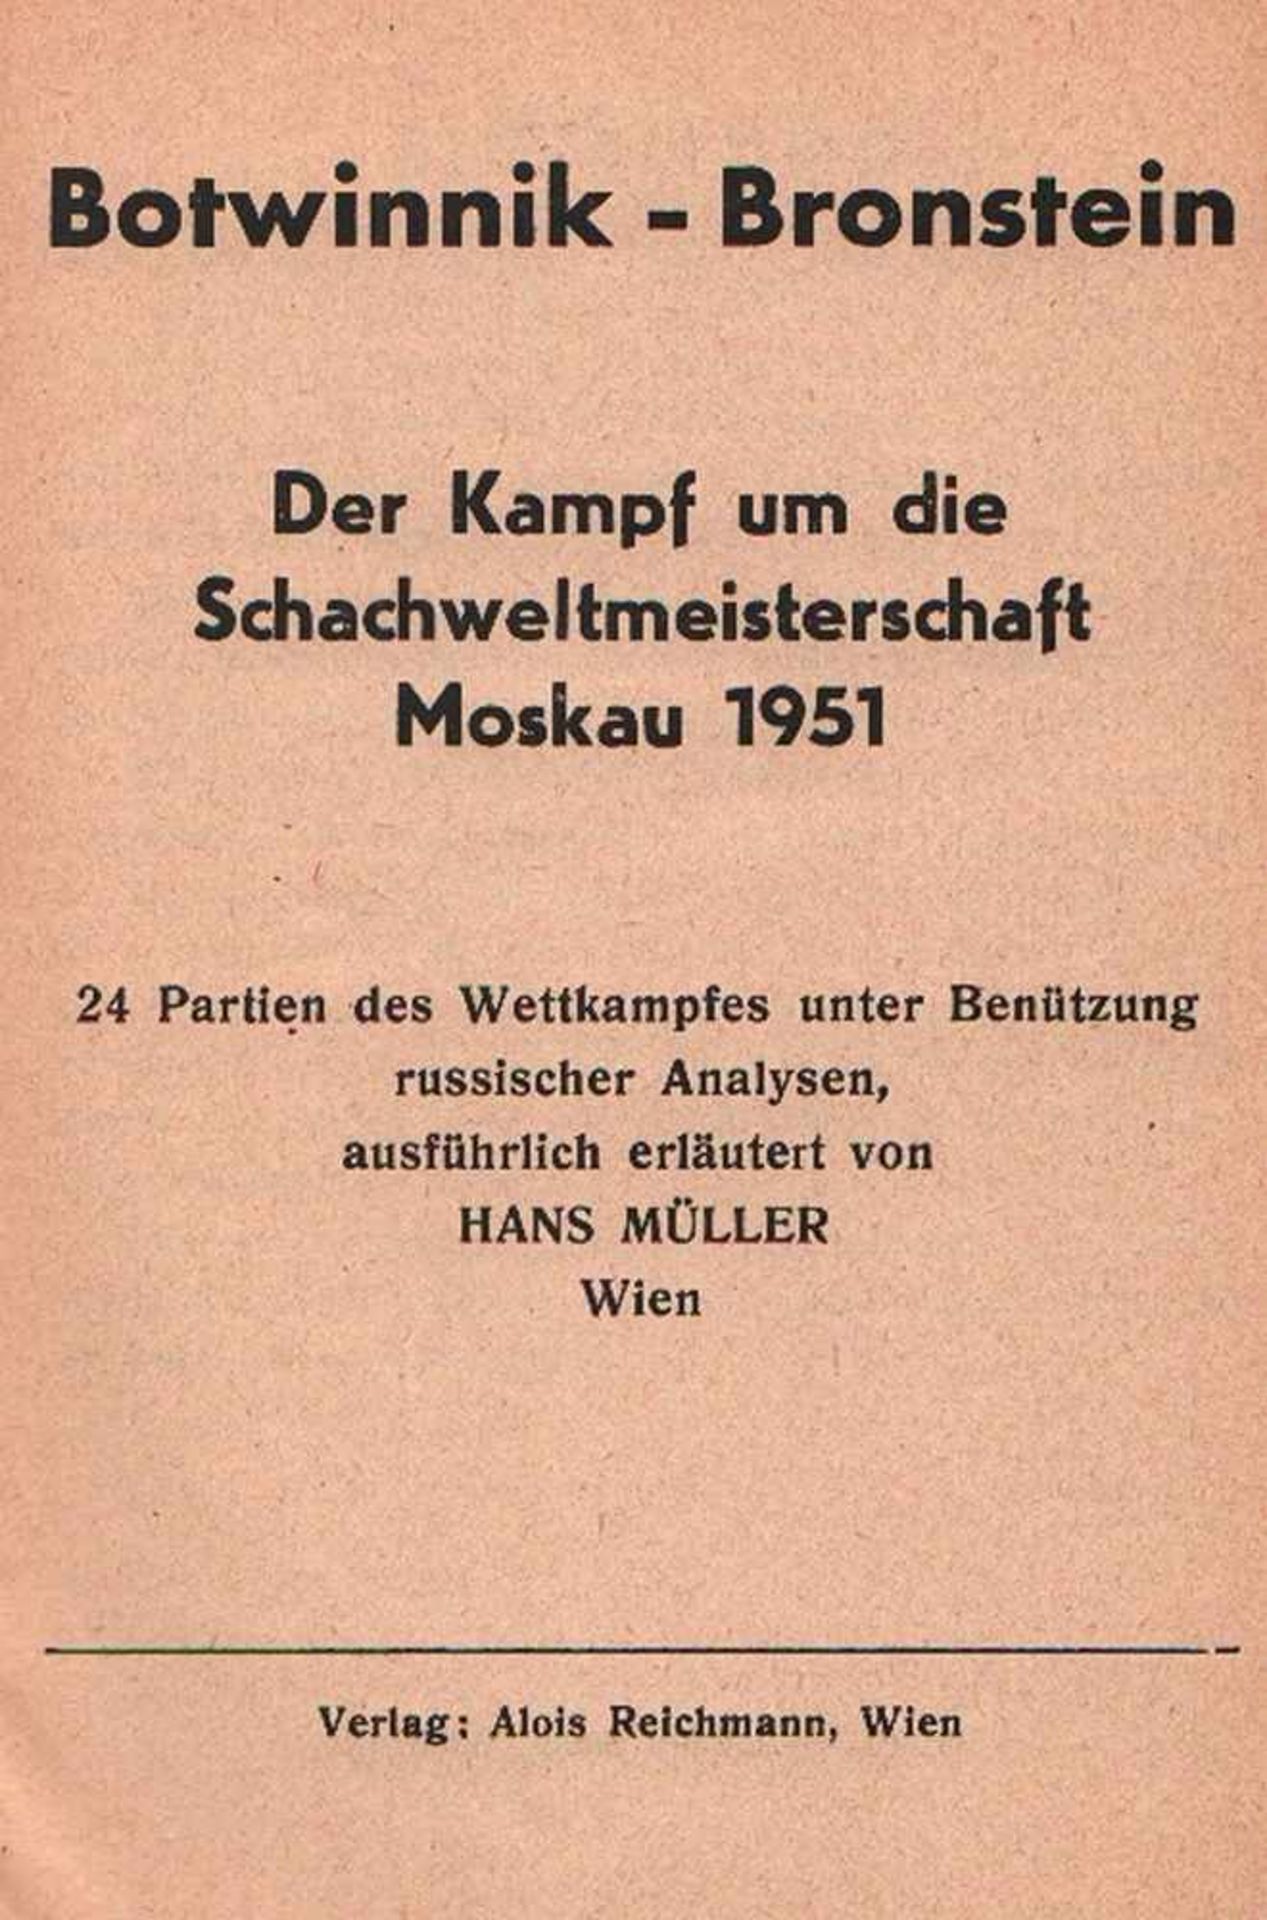 Botwinnik, M. Konvolut mit 4 Bänden über die Weltmeisterschaftskämpfe von Botwinnik der Jahre 1951 -